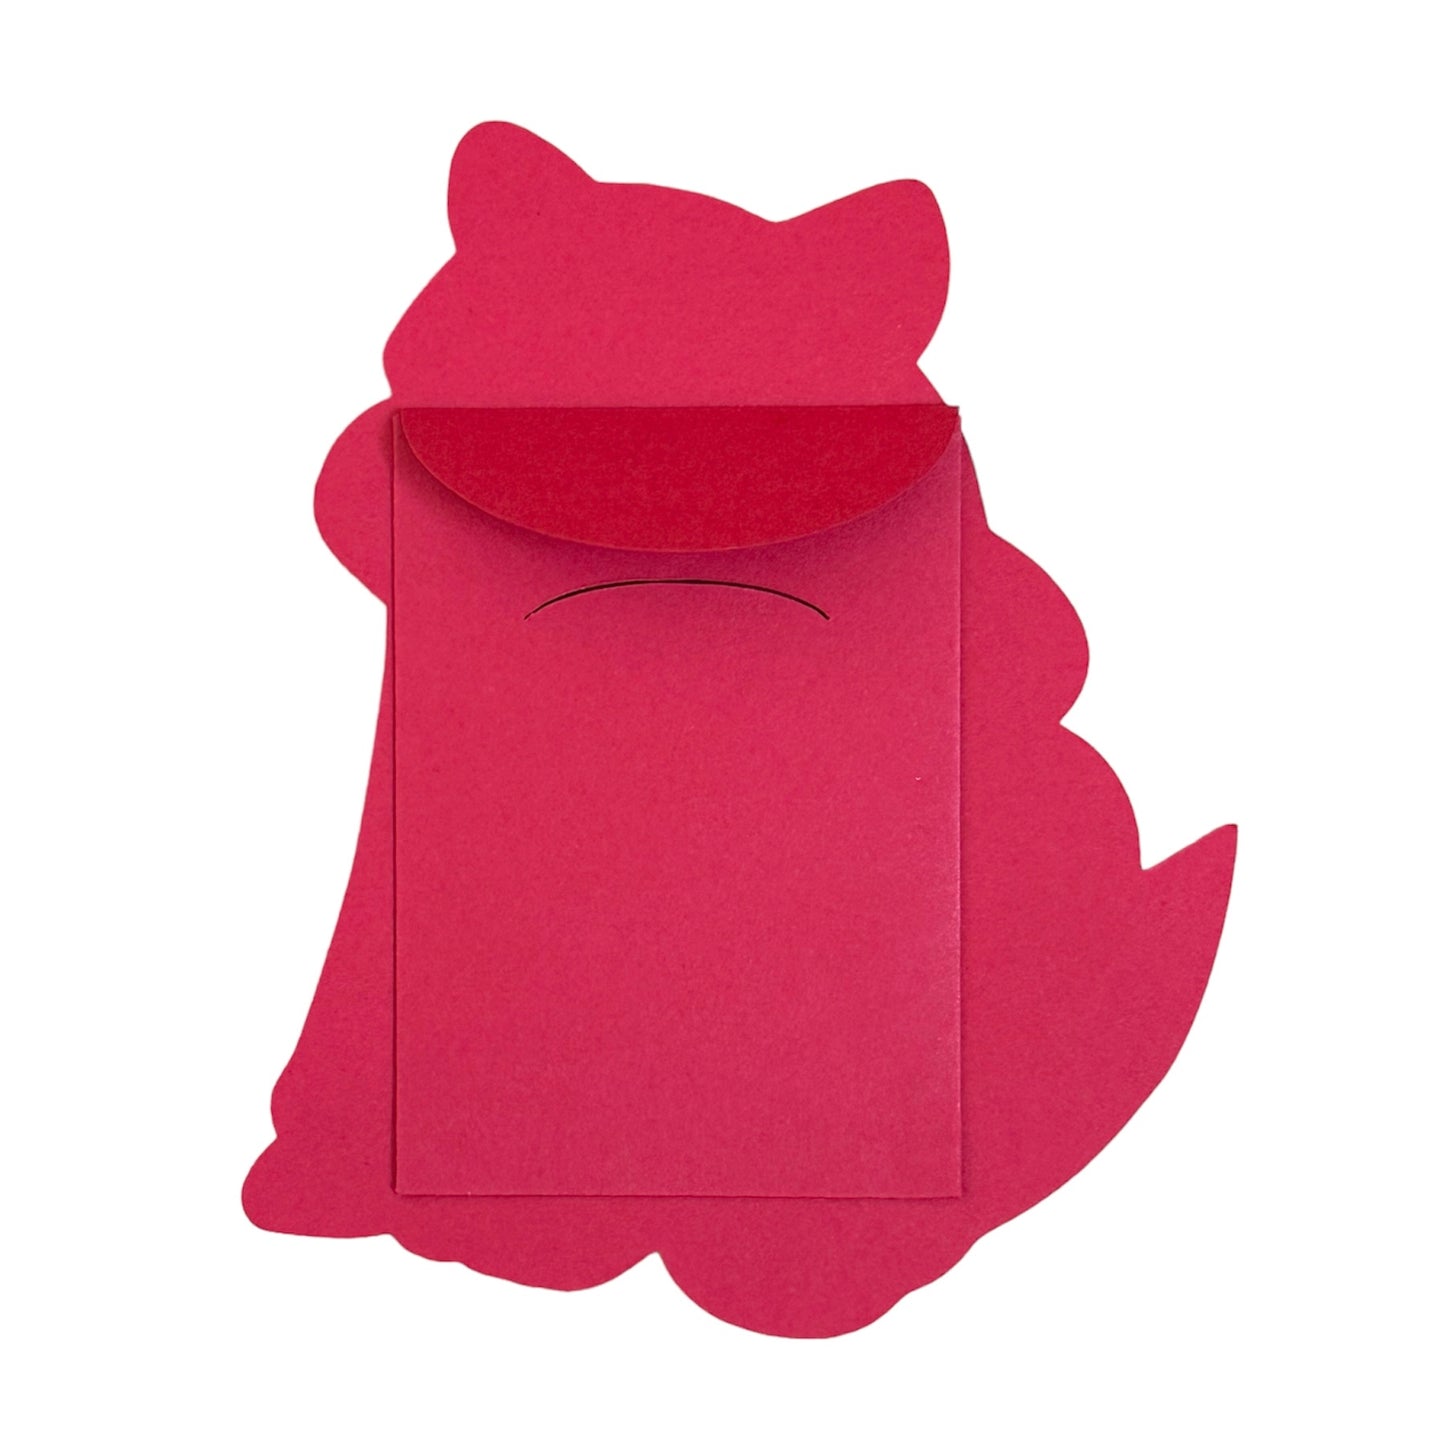 Chunkemon Houndour Red Envelope